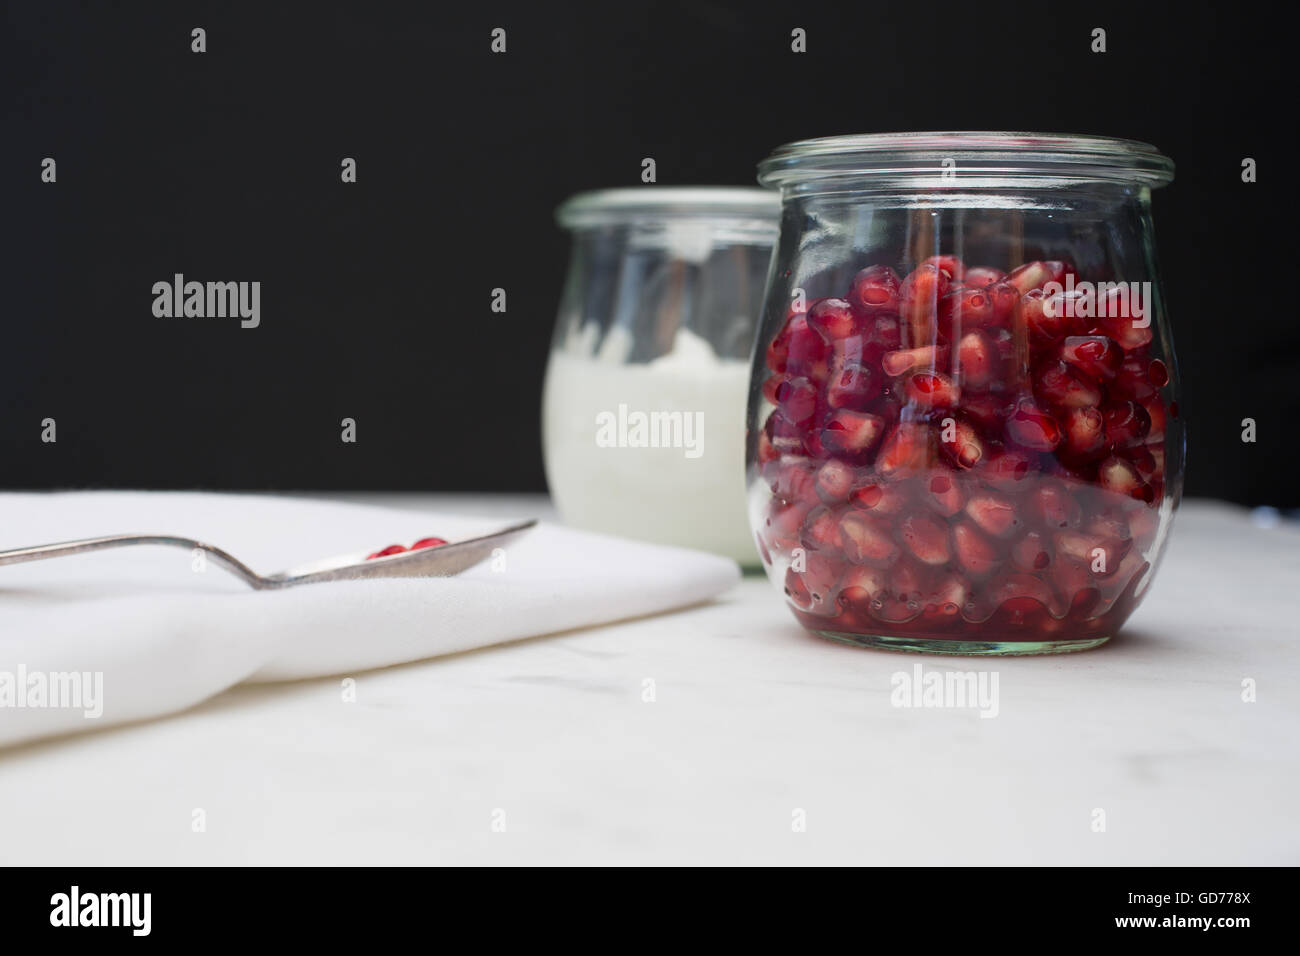 Vista frontal de un recipiente de vidrio de la granada arils (semillas), y el yogur. Unas pocas semillas descansan sobre una cuchara en una servilleta. Foto de stock